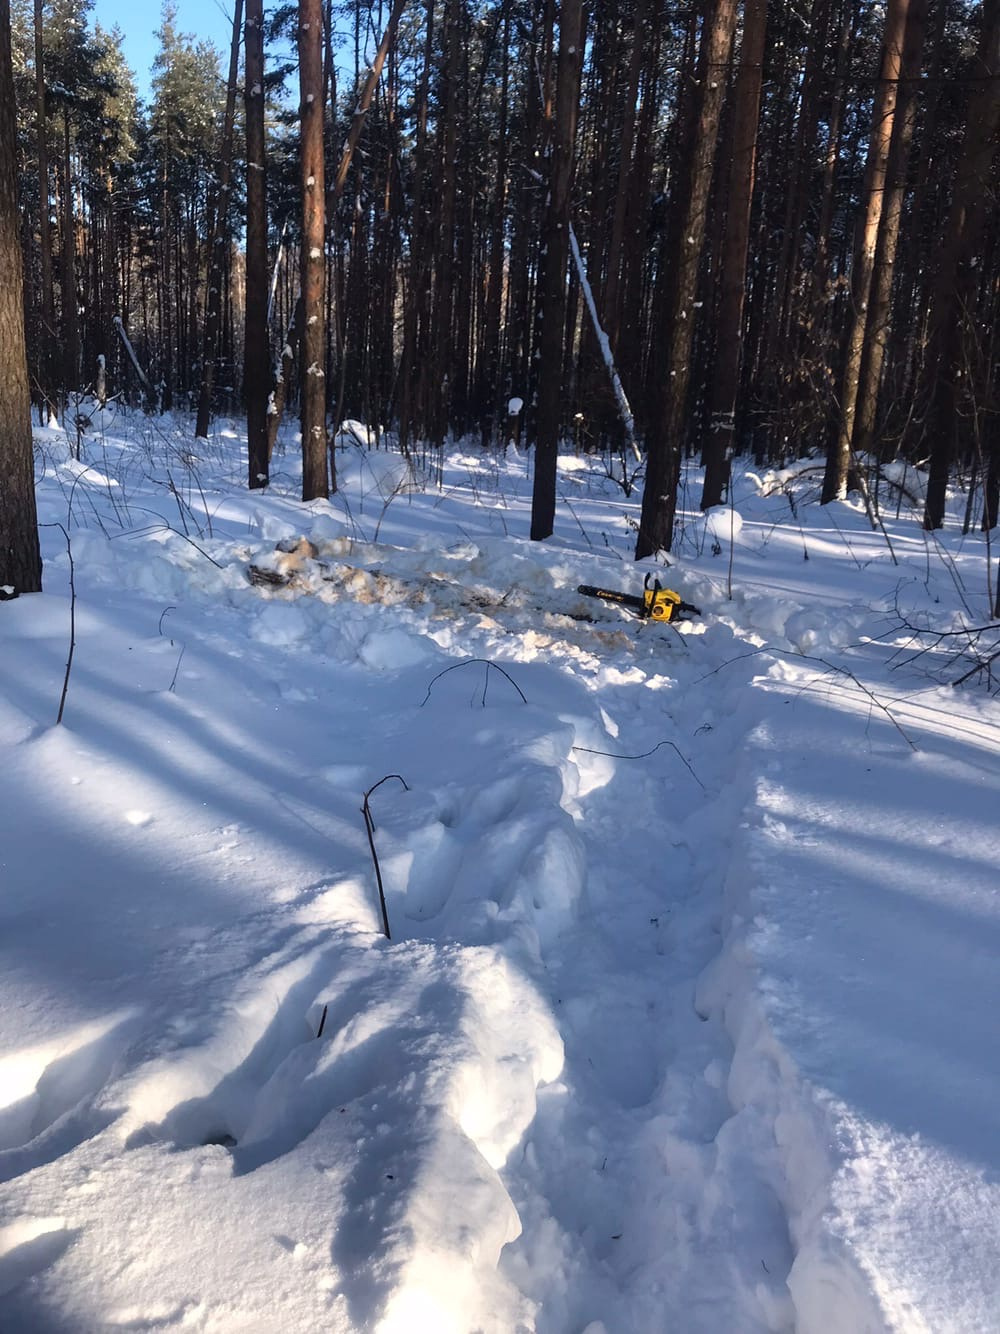 В снегу неподалеку от пеньков оставили бензопилу